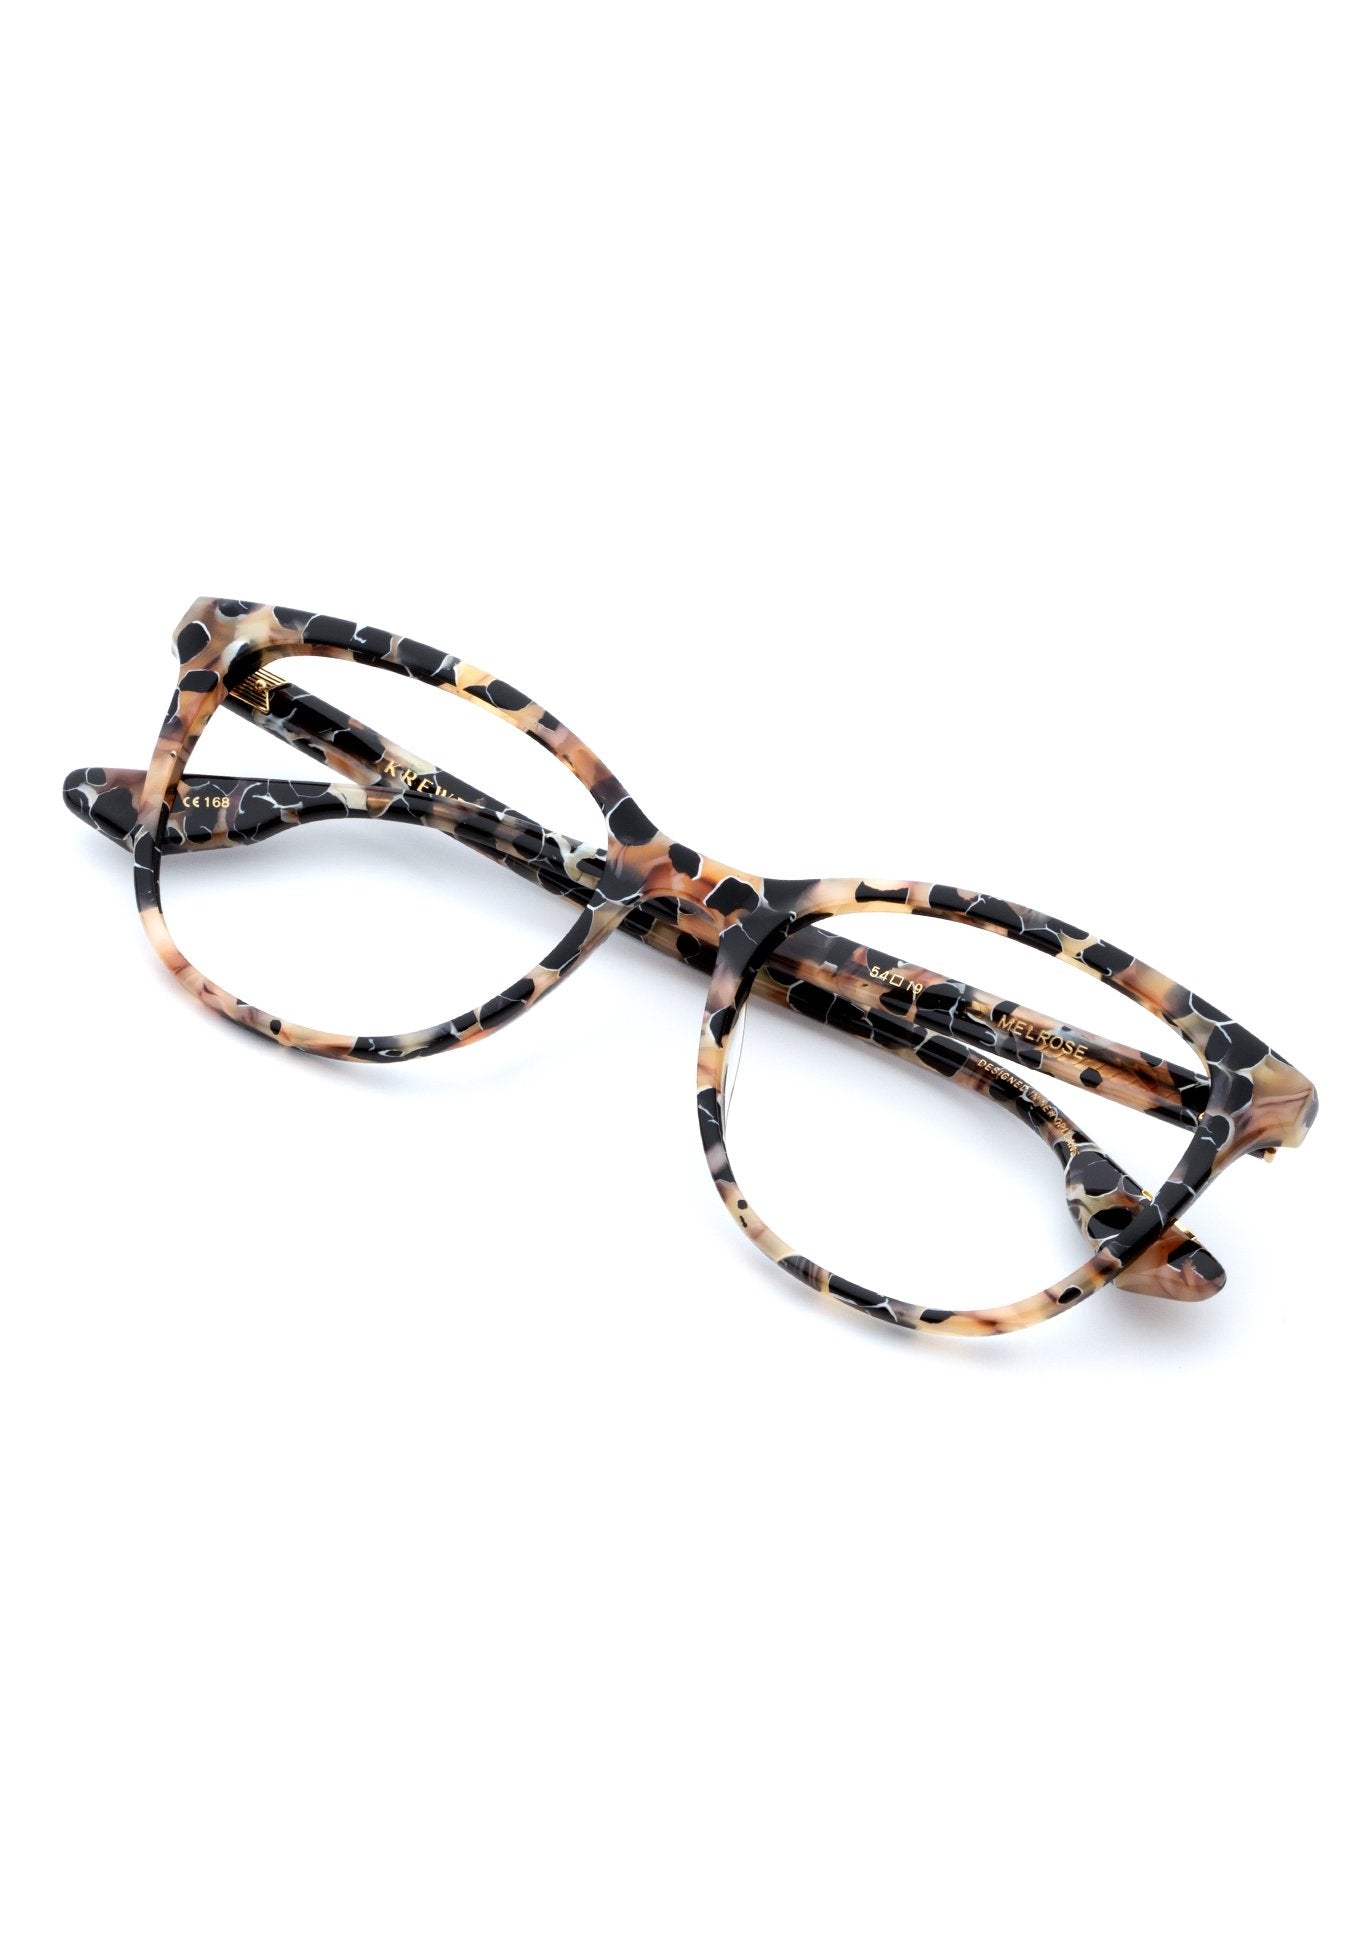 KREWE - MELROSE | Crema Handcrafted, luxury brown acetate eyeglasses